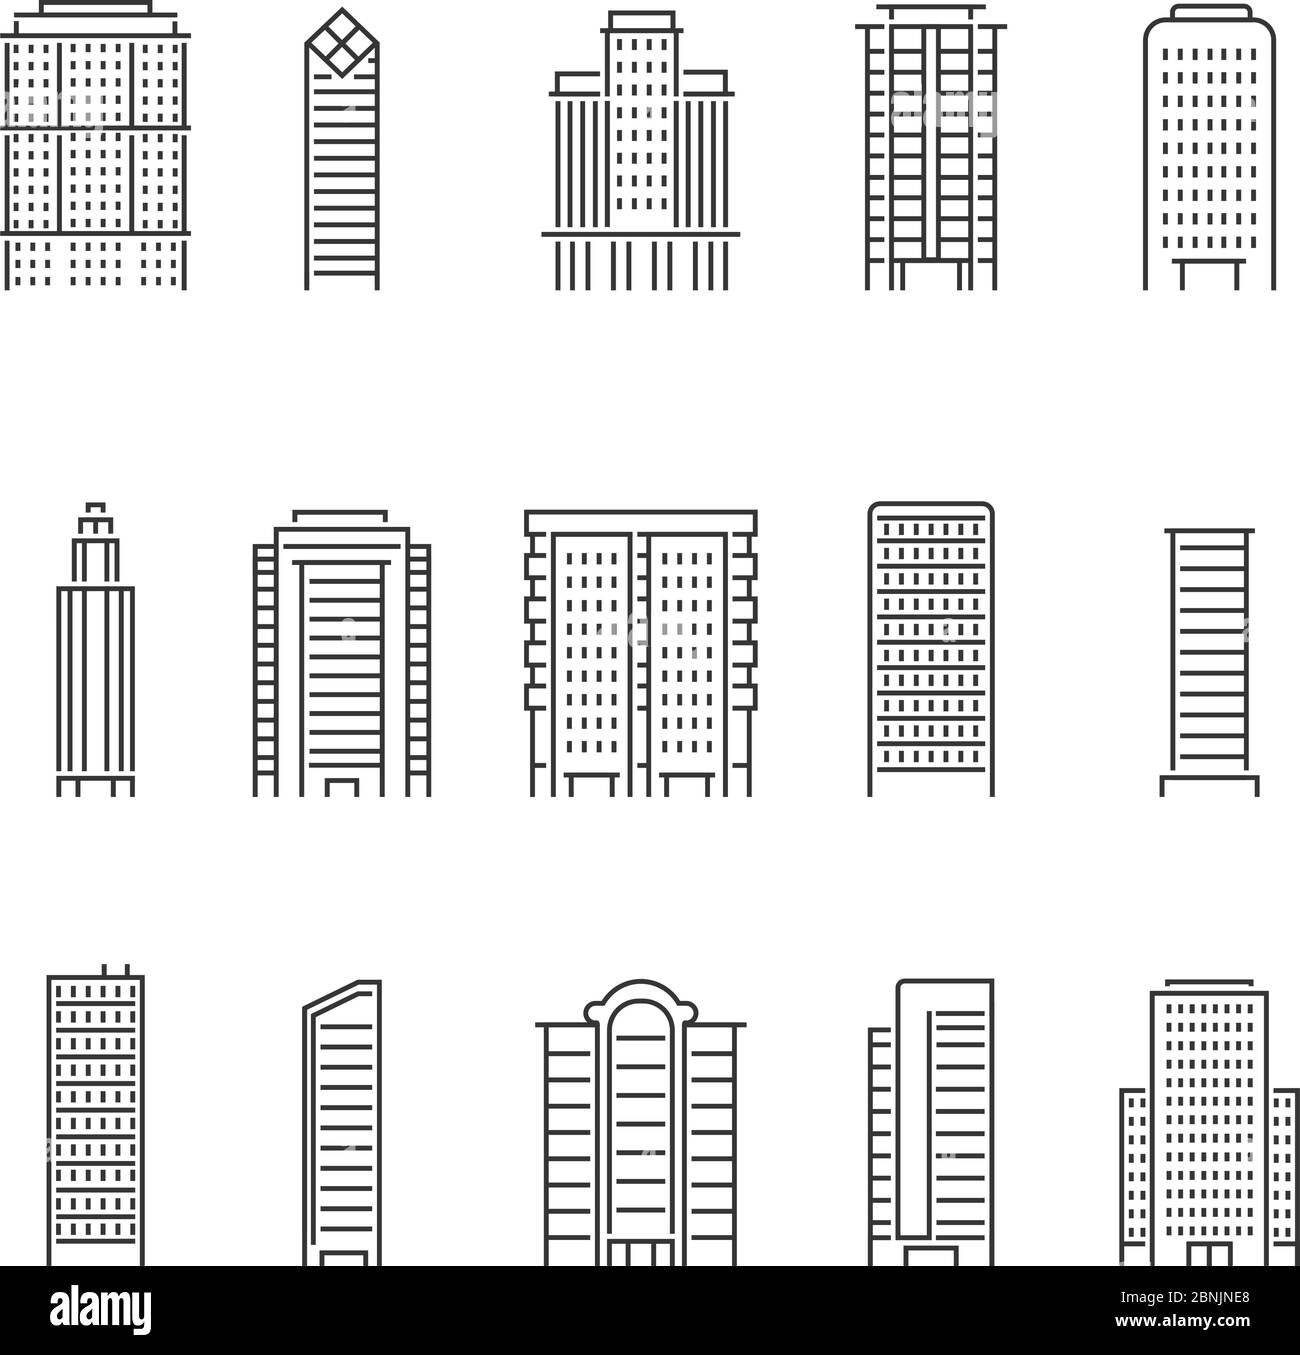 Monolinie Vektor Illustrationen von modernen Gebäuden Stock Vektor